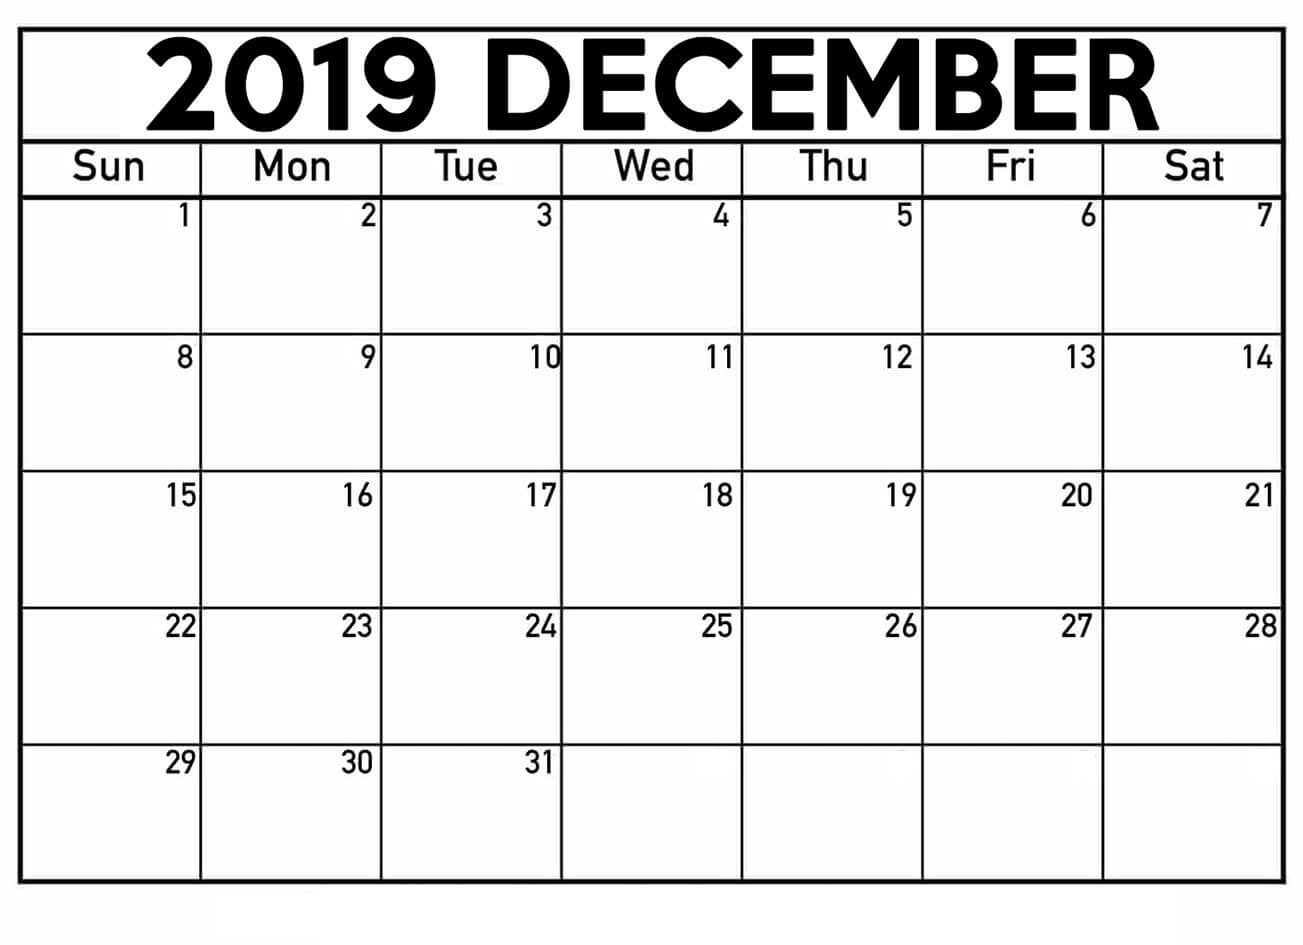 December 2019 Calendar Printable Waterproof Paper